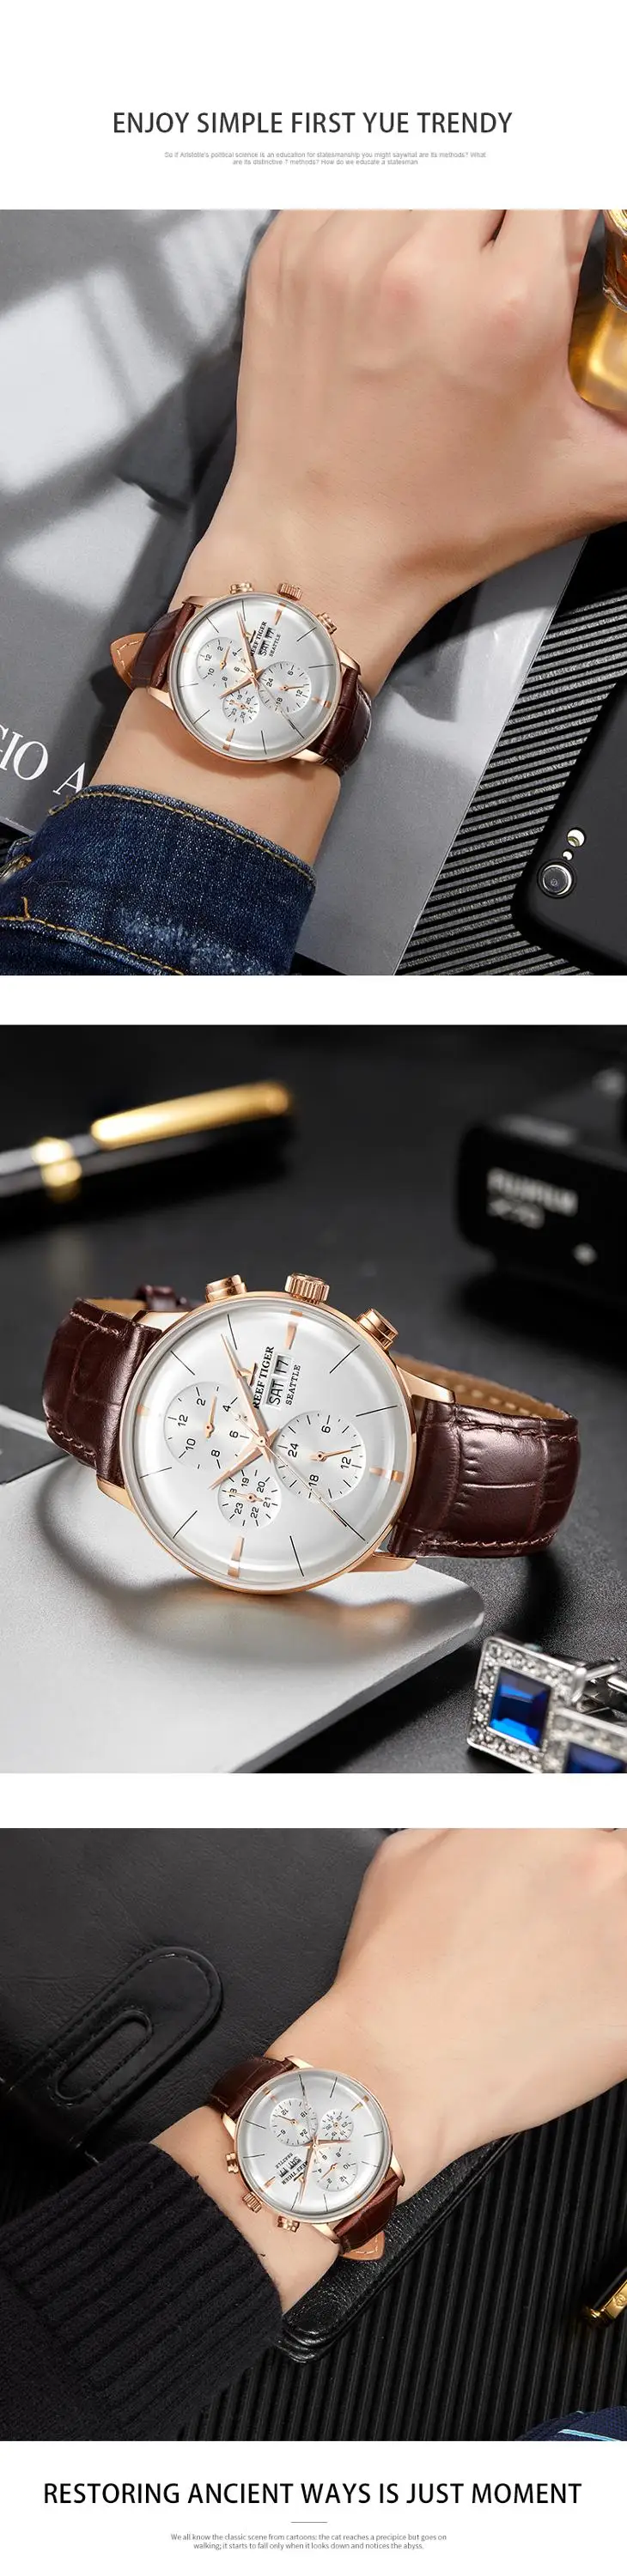 2018 Риф Тигр/RT Элитный бренд для мужчин часы водостойкие функция автоматический часы все синий кожаный ремешок Relogio Masculino RGA1699